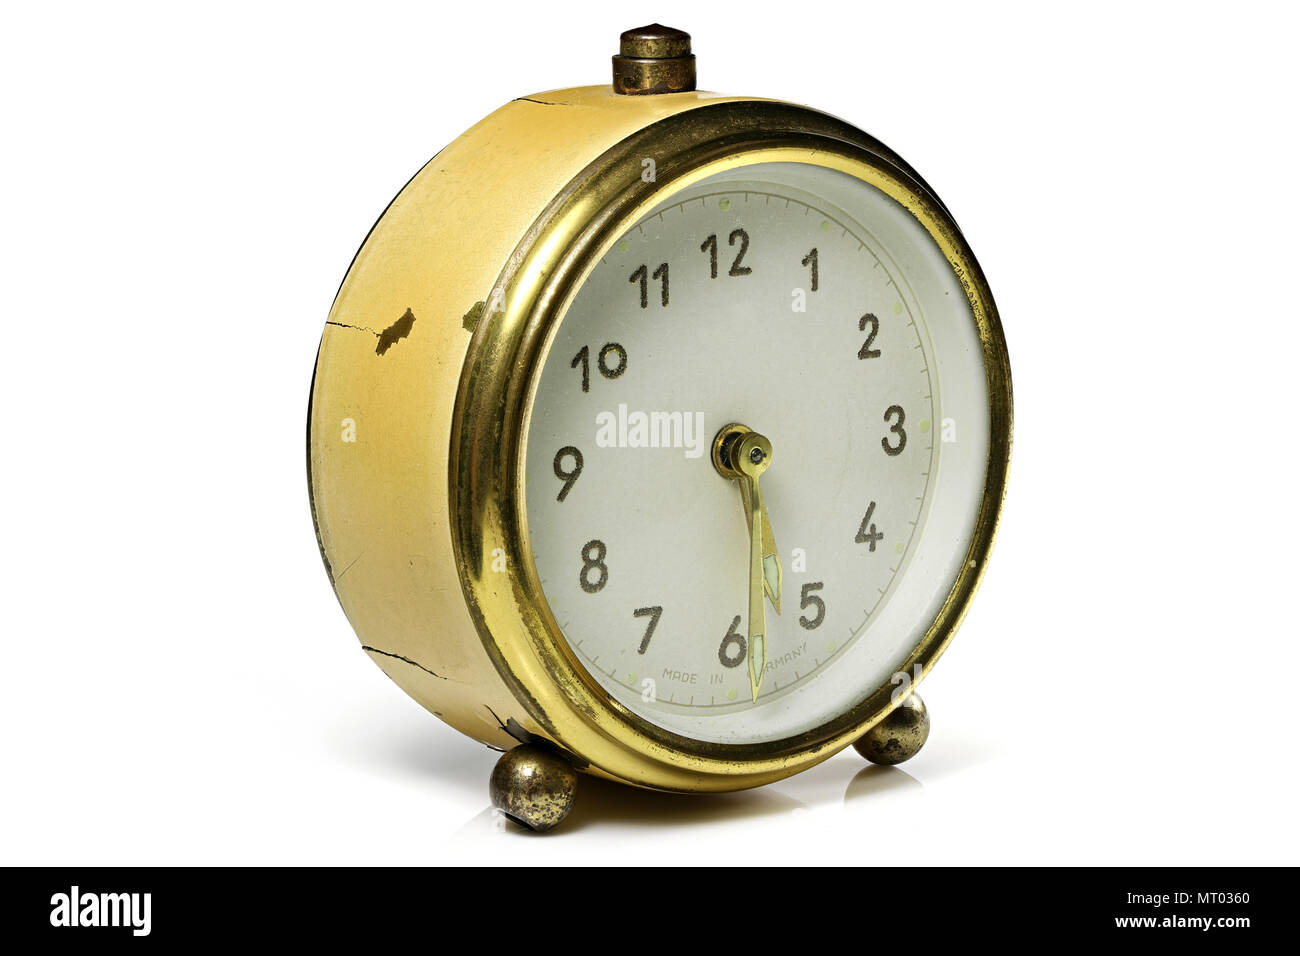 Vintage Alarm Clock Ringing At 5 30 Isolated On White Background Stock Photo Alamy